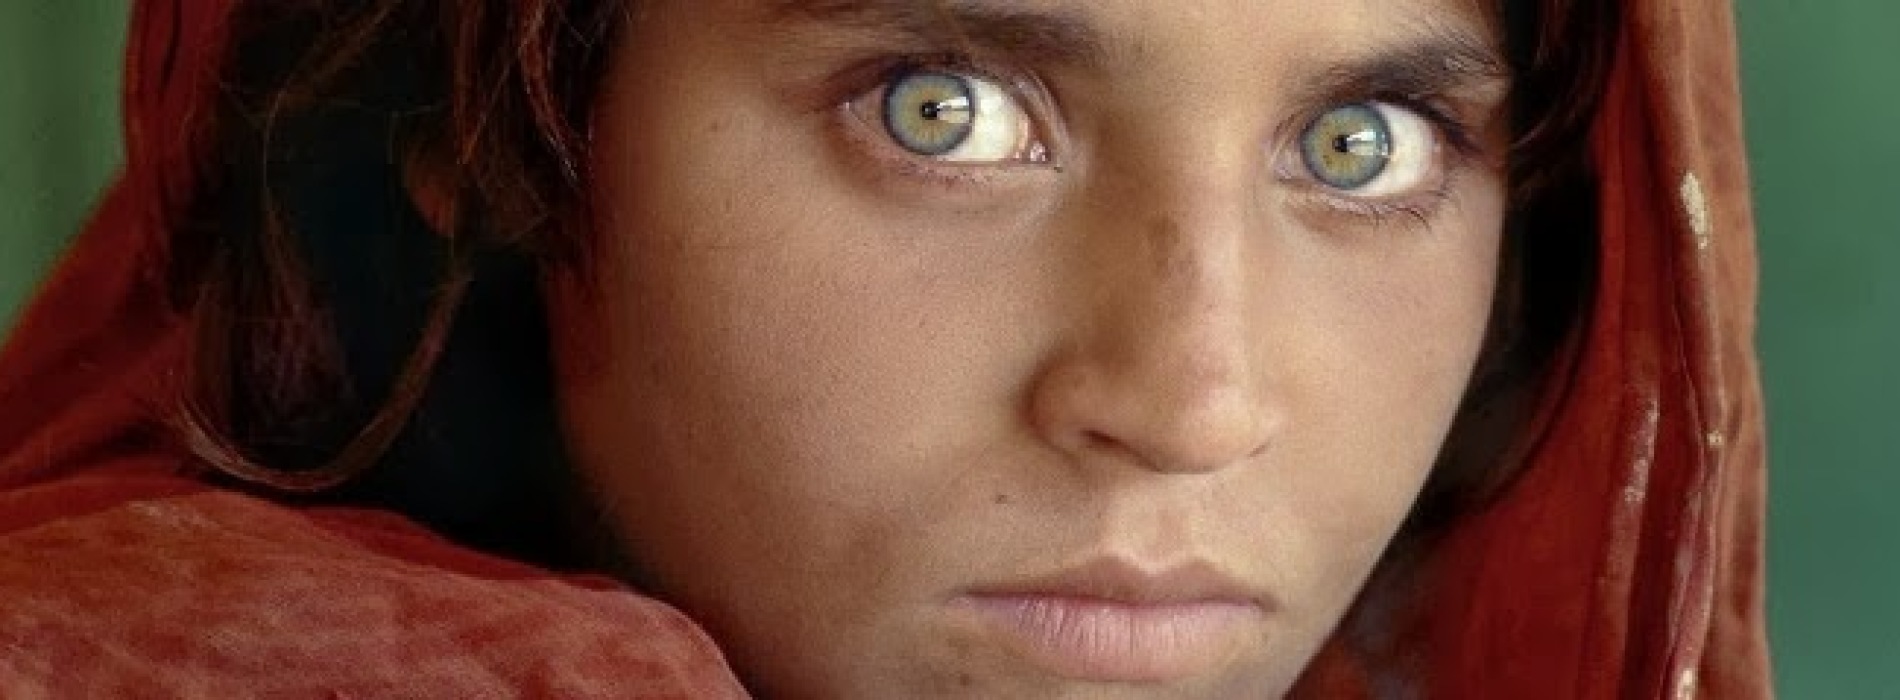 Al PAN la ragazza afgana e altre storie di Steve McCurry